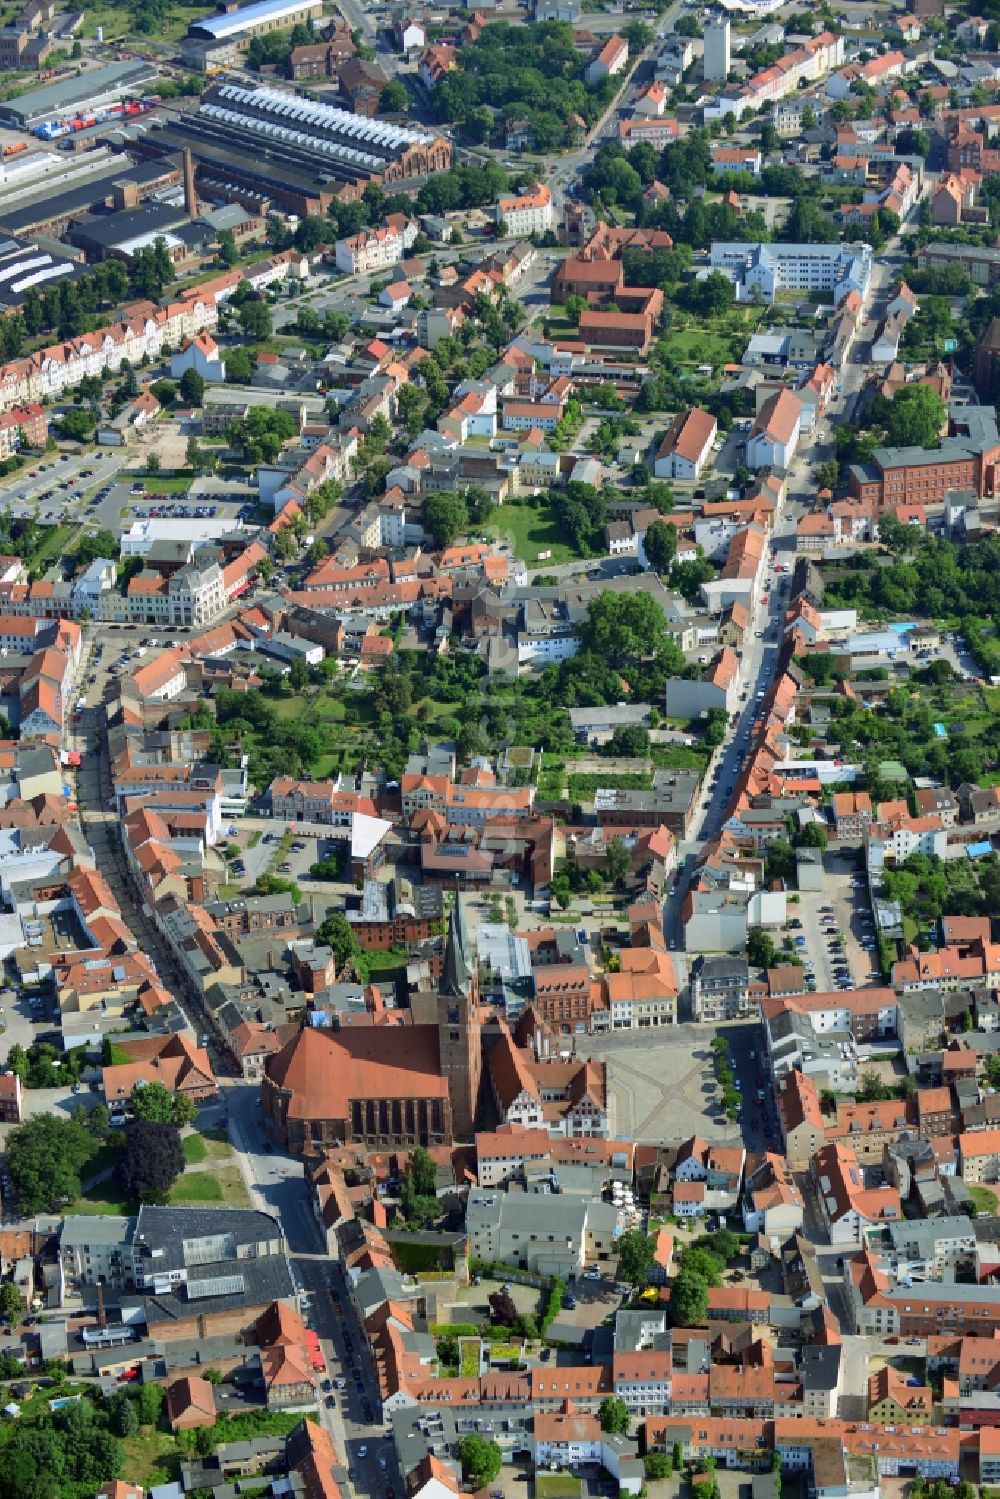 Stendal von oben - Stadtansicht der Innenstadt der Hansestadt Stendal im Bundesland Sachsen-Anhalt